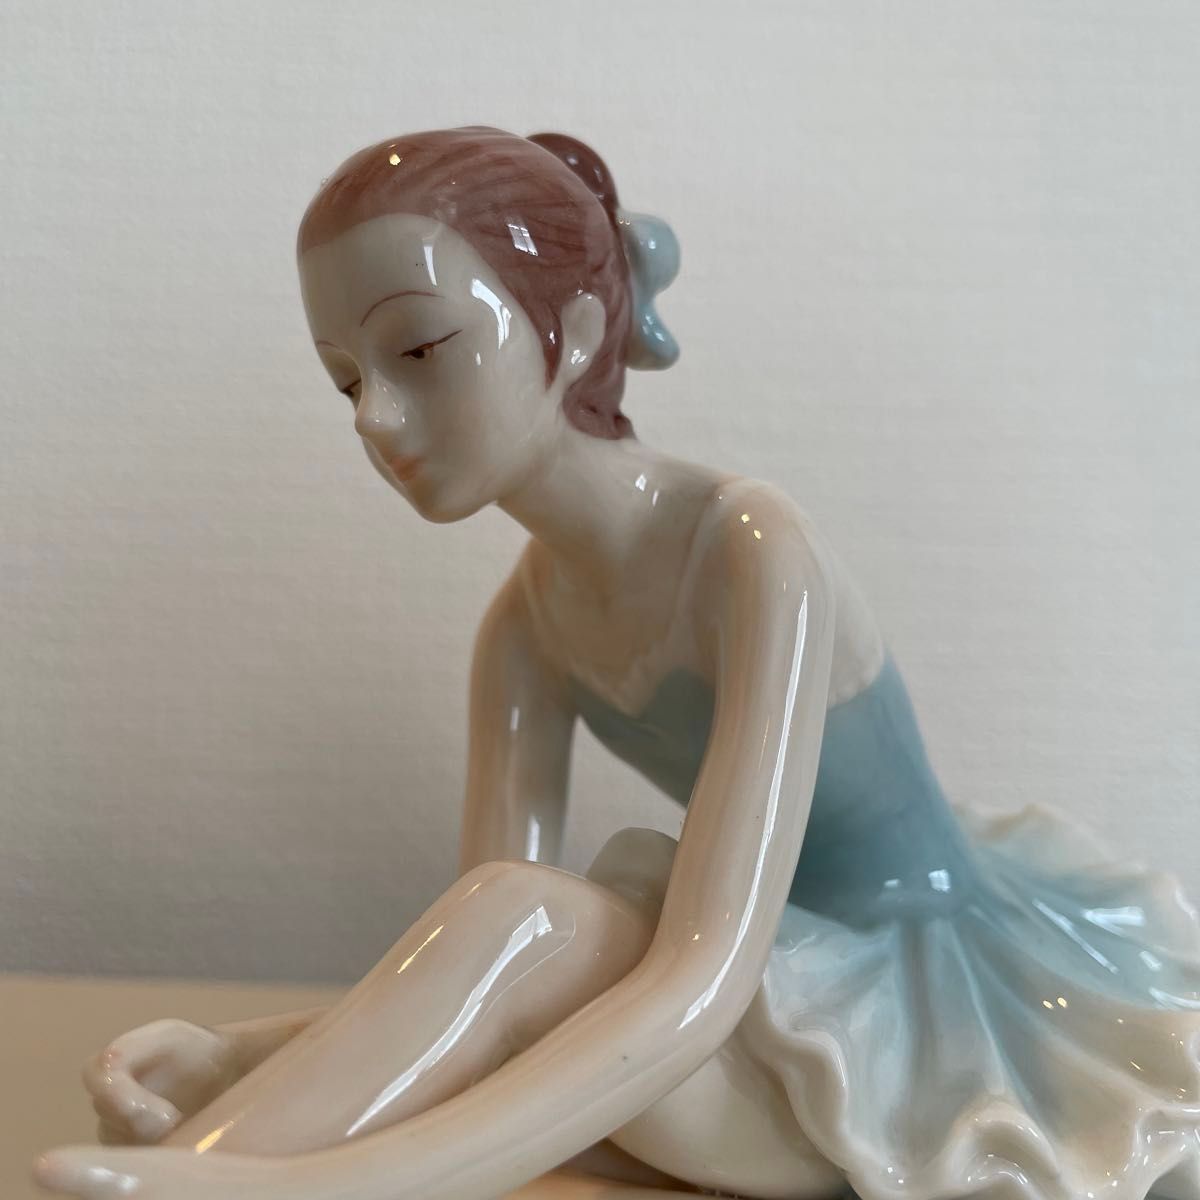 バレリーナ 陶器 置物 2点セット【美品】バレエ オブジェ フィギュア 